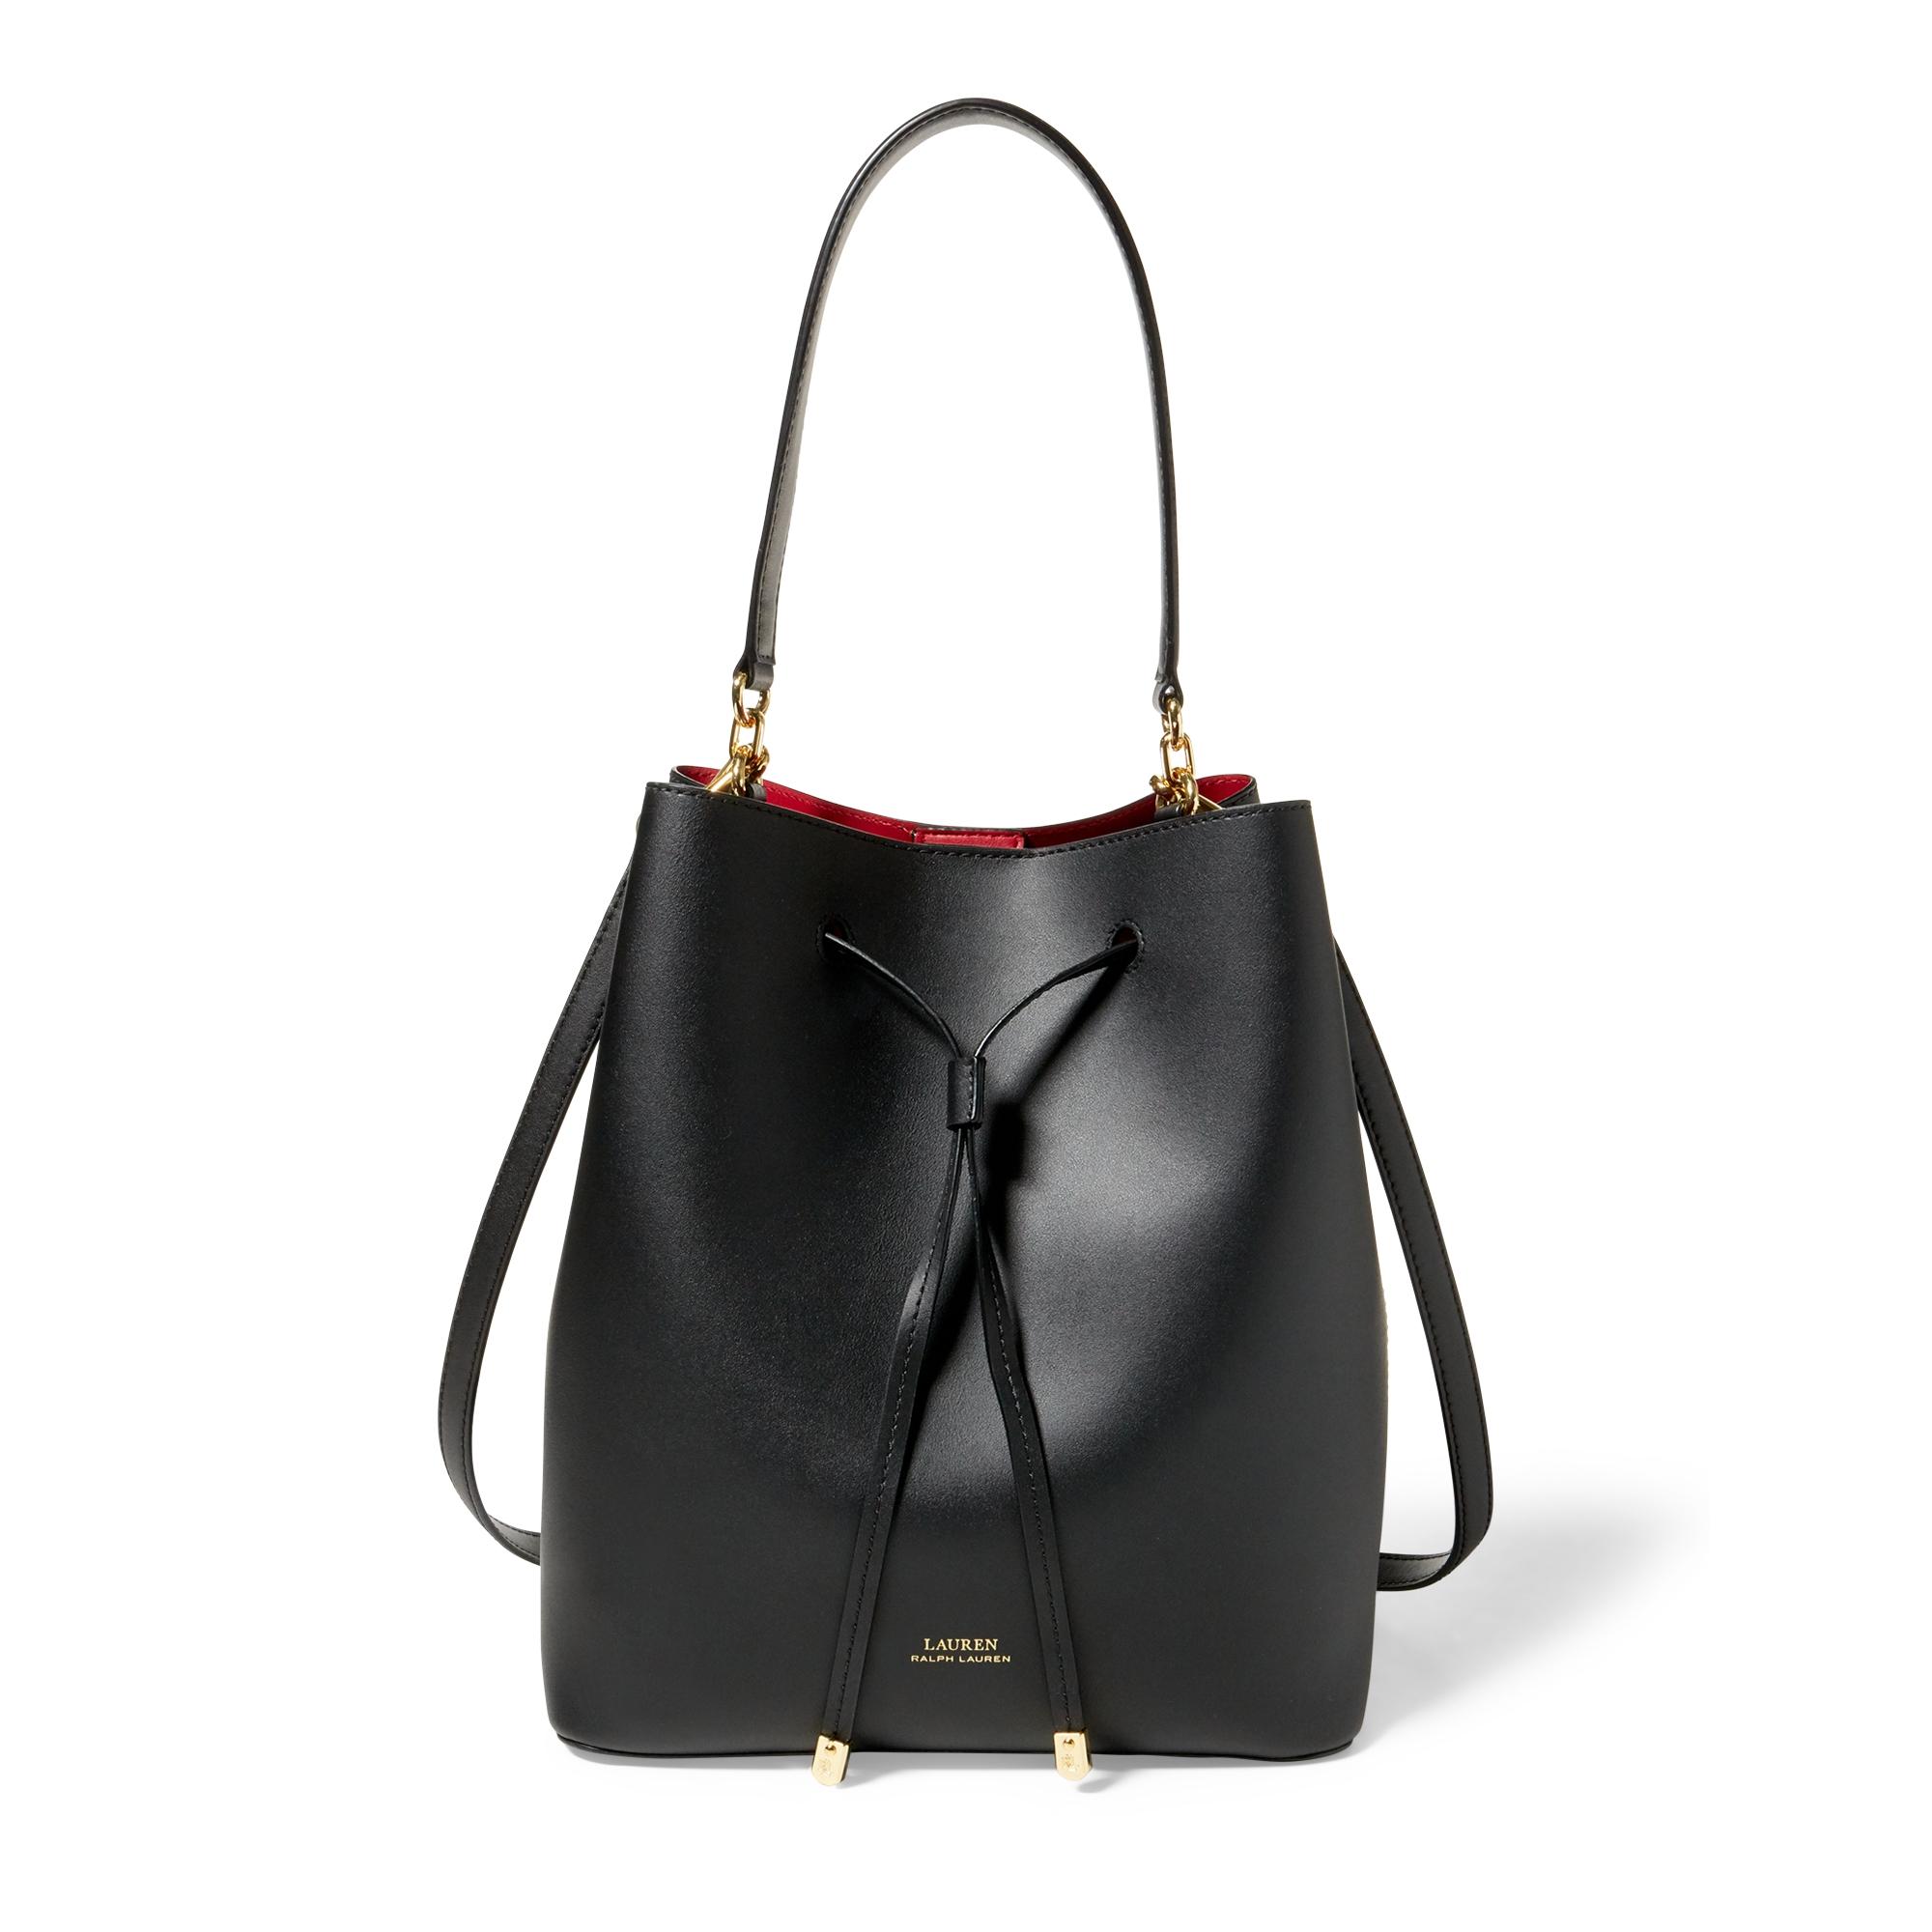 Ralph Lauren Lauren Dryden Debby Leather Mini Bucket Bag in Black/Red (Black)  | Lyst